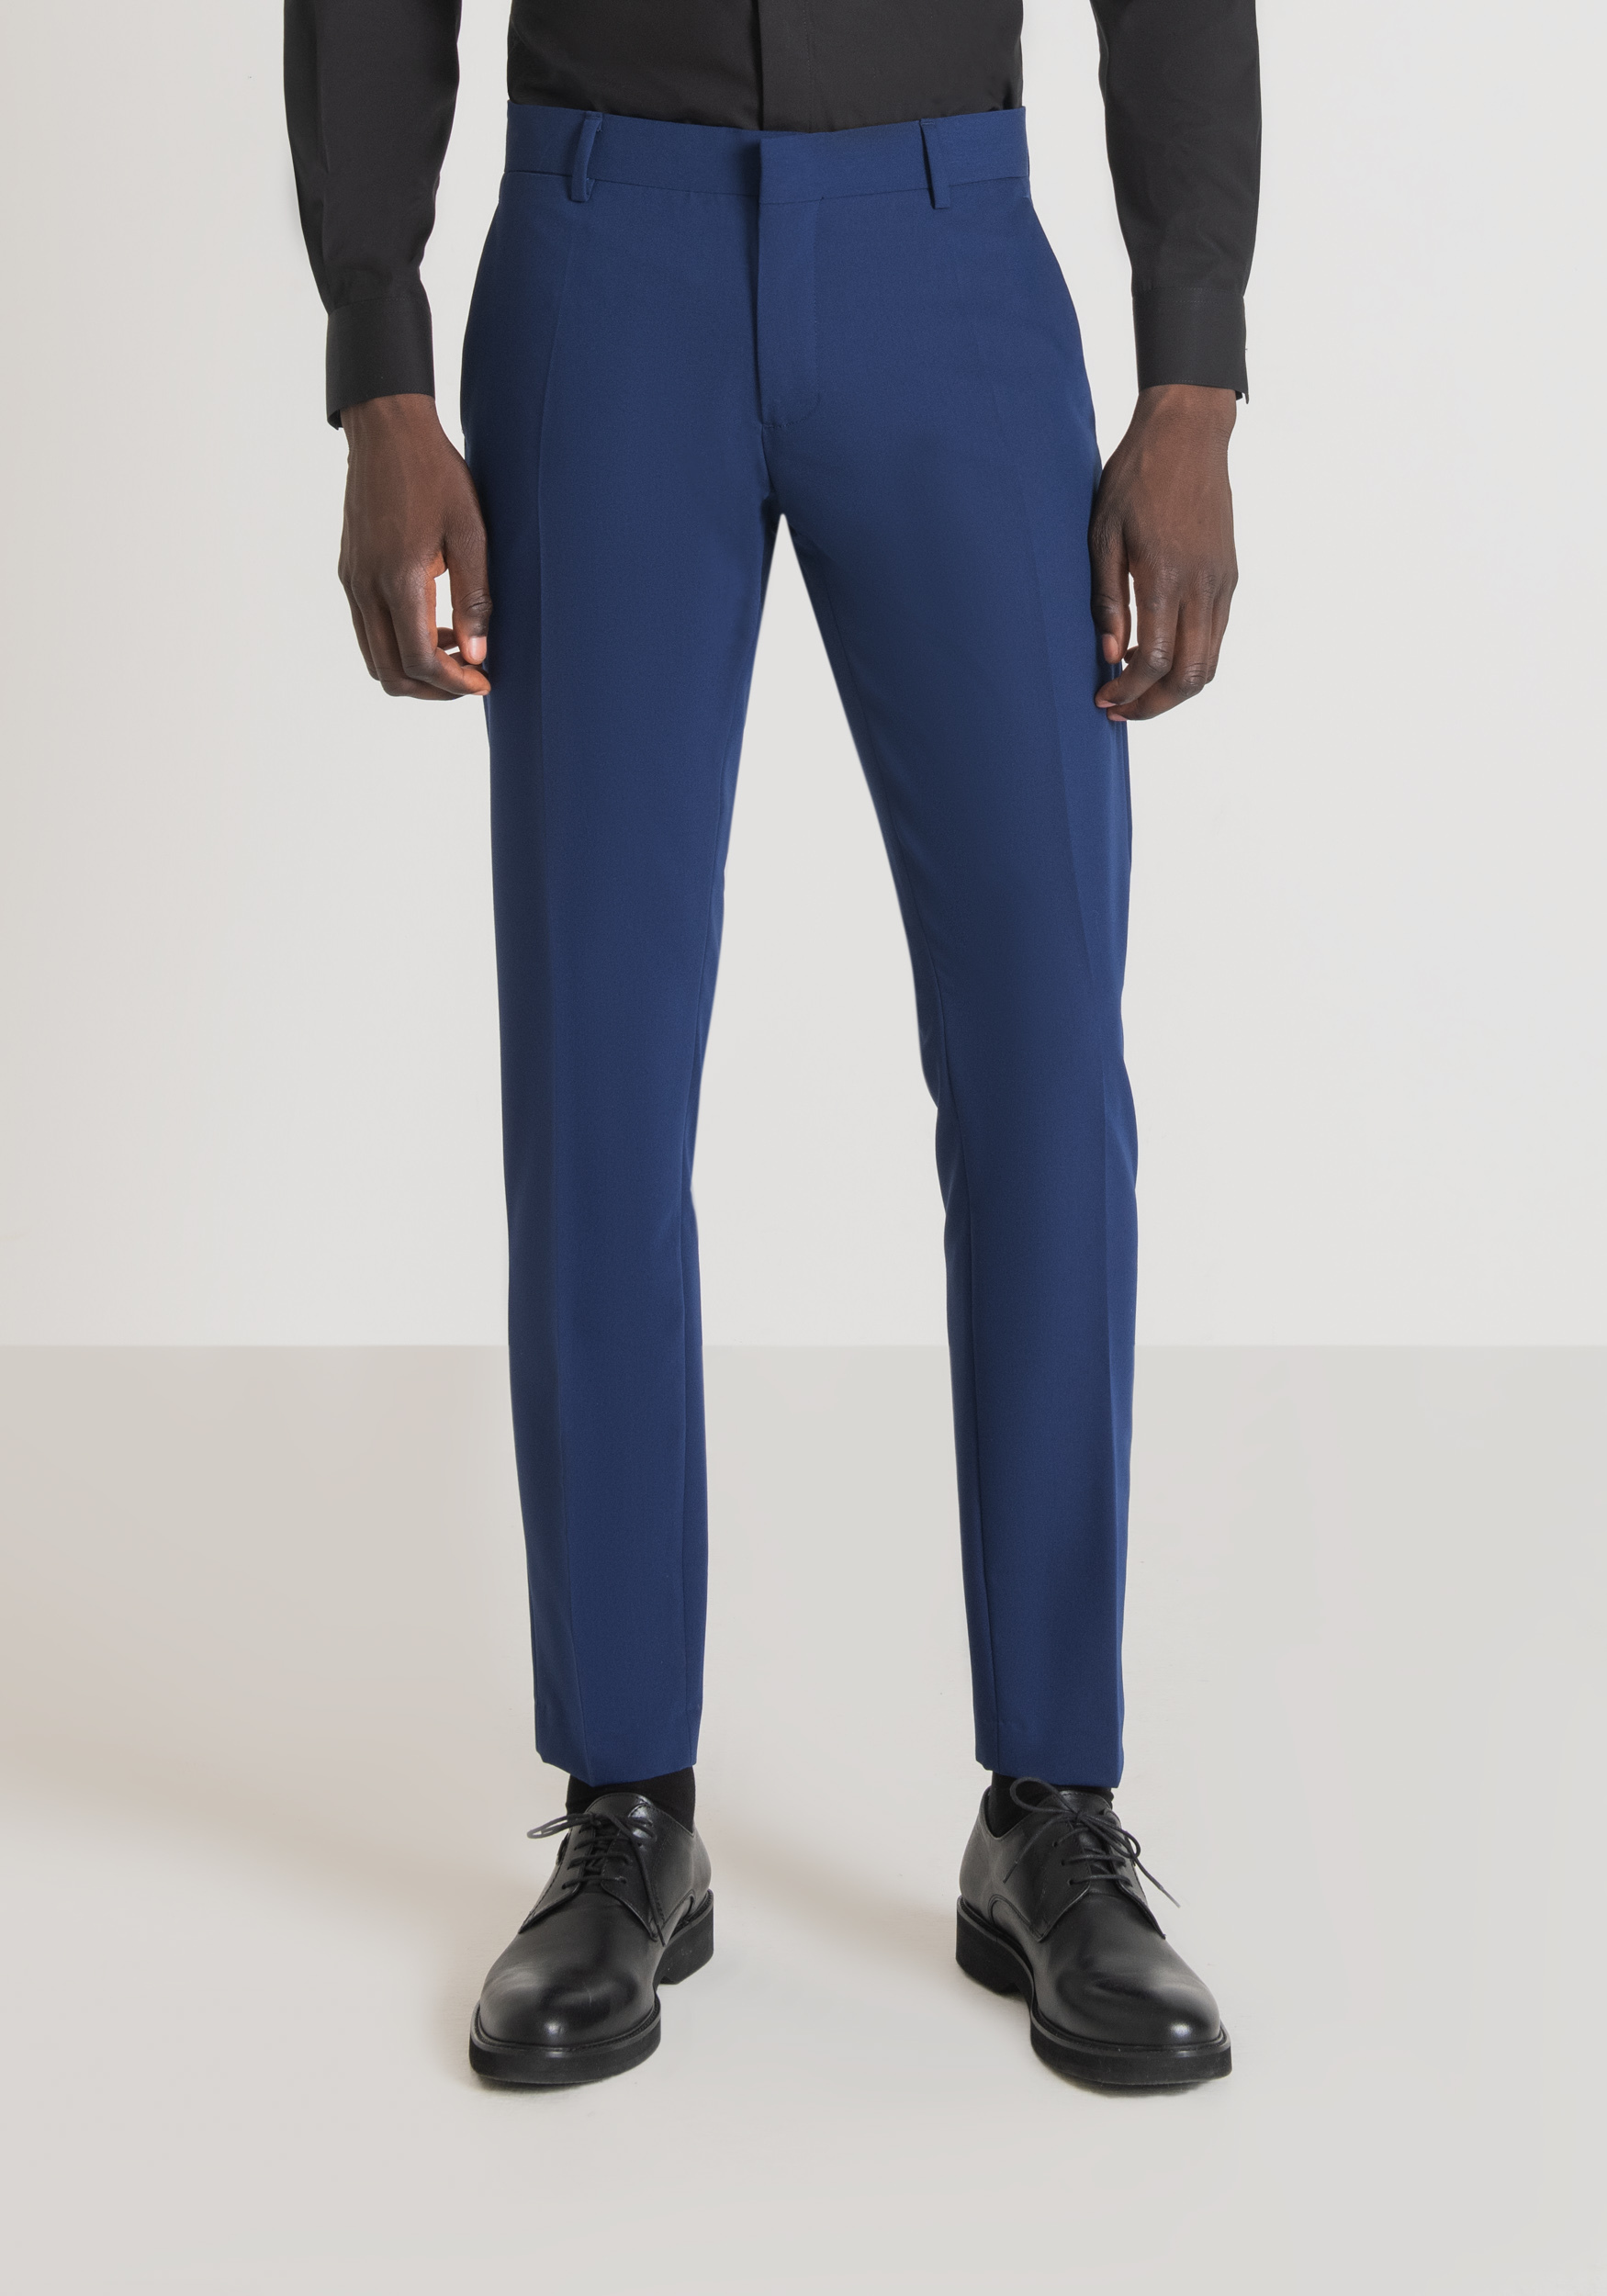 Antony Morato Pantalon Slim Fit Bonnie En Tissu De Viscose Melangee Elastique Avec Fermeture Dissimulee Bluette | Homme Pantalons